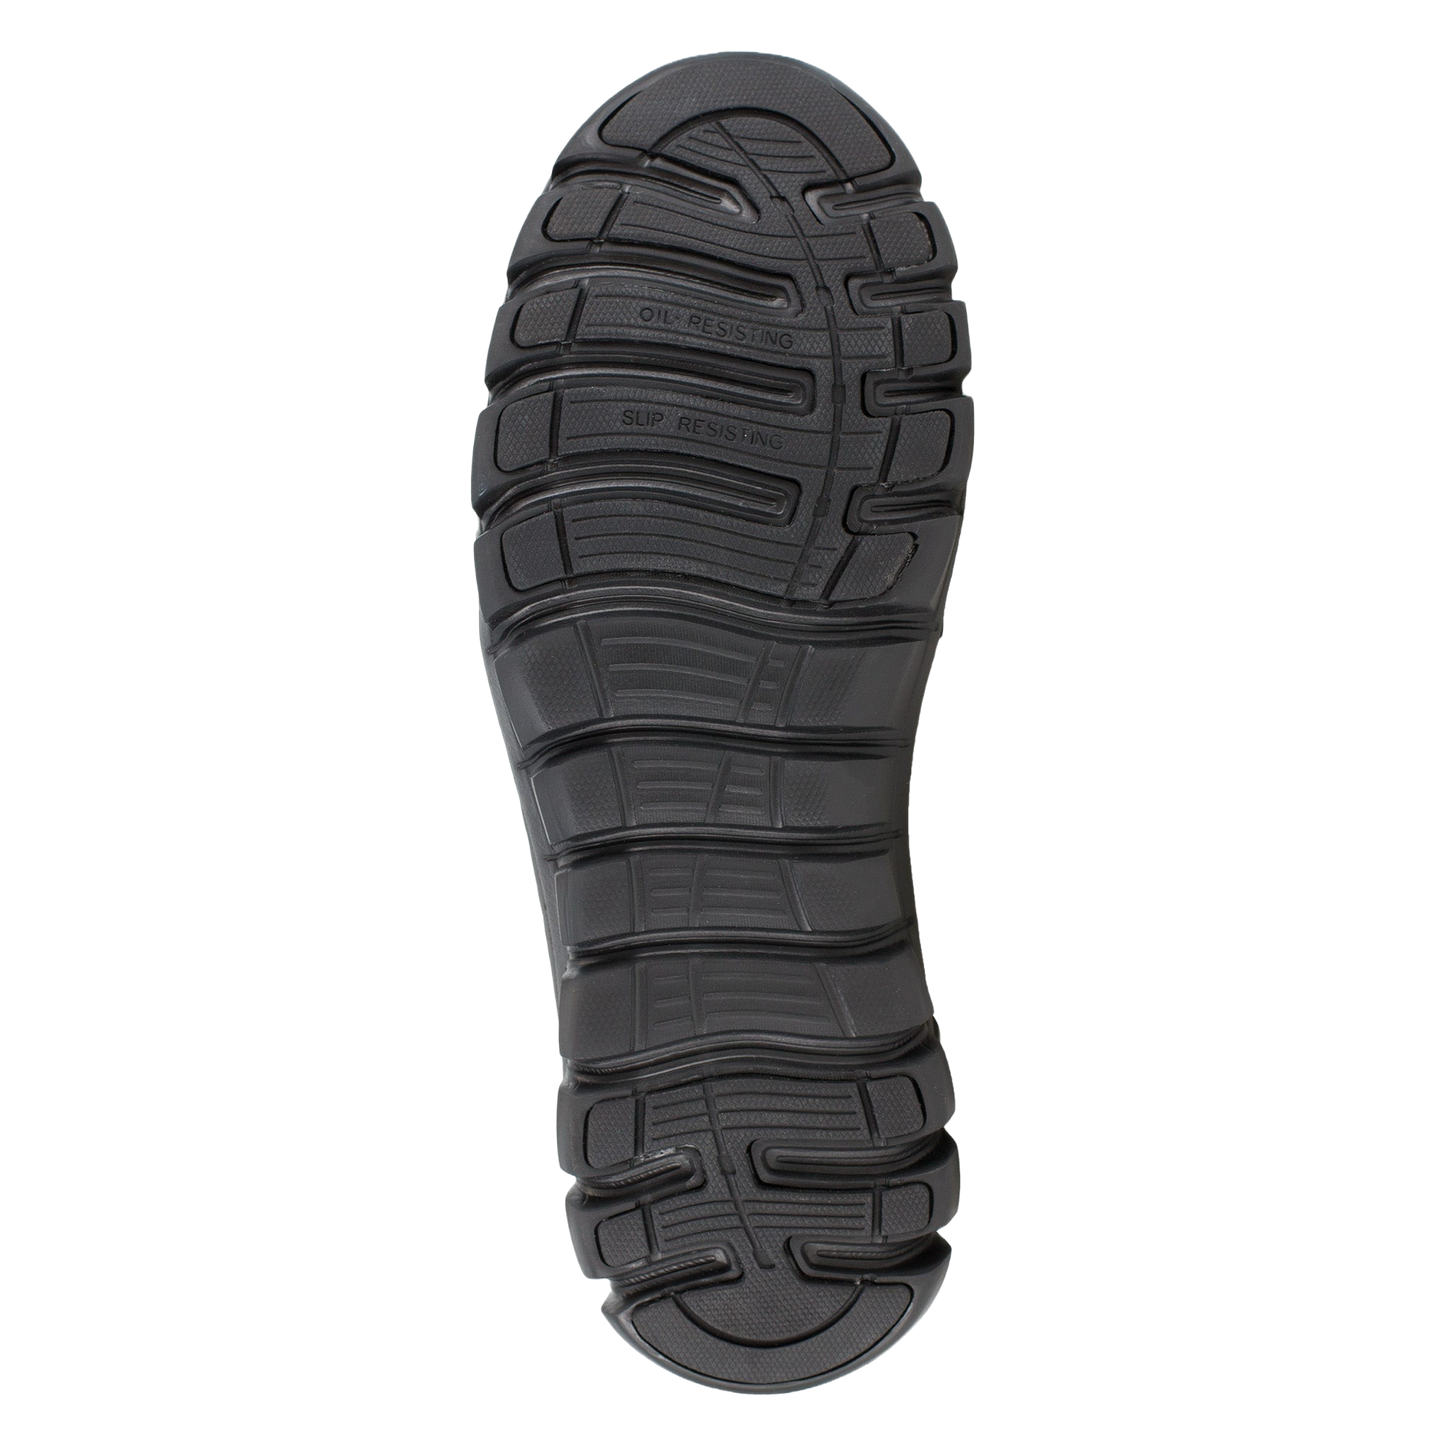 Reebok Men's Sublite Cushion Composite Toe Sport Work Shoes RB4039